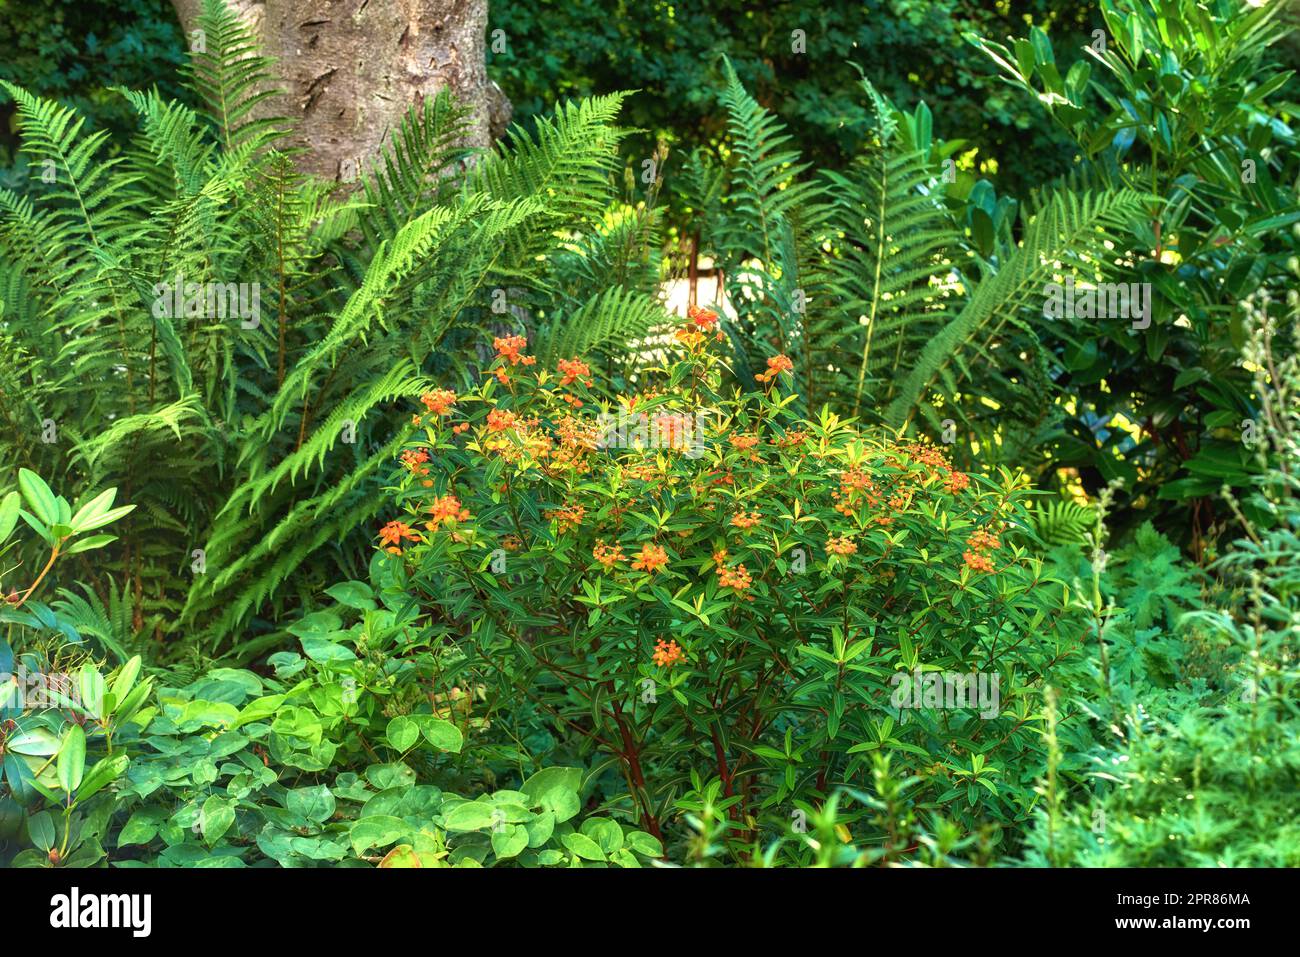 Un jardin de papillons adventices avec de longues fougère autour. Un jardin avec des plantes tropicales et des arbres. Vue sur le magnifique parc agréable avec des fleurs de laitoued orange et des feuilles vertes. Banque D'Images